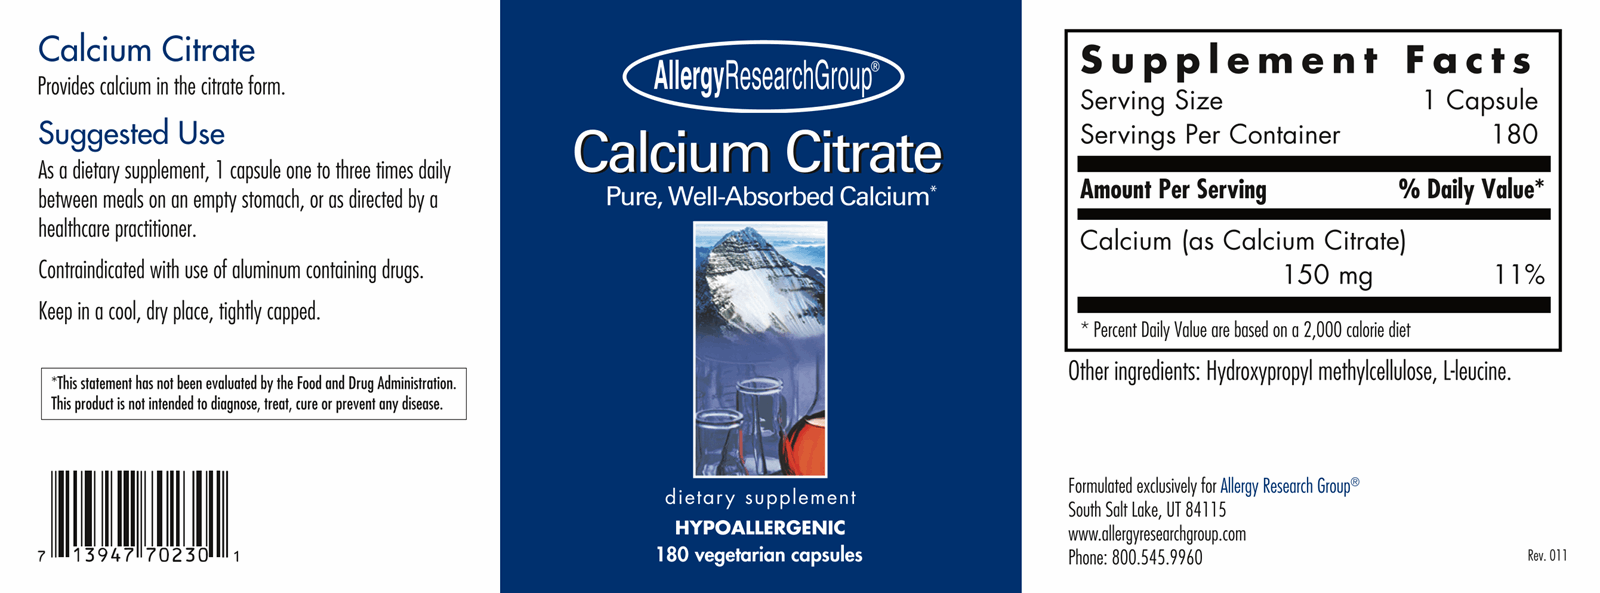 Calcium Citrate 